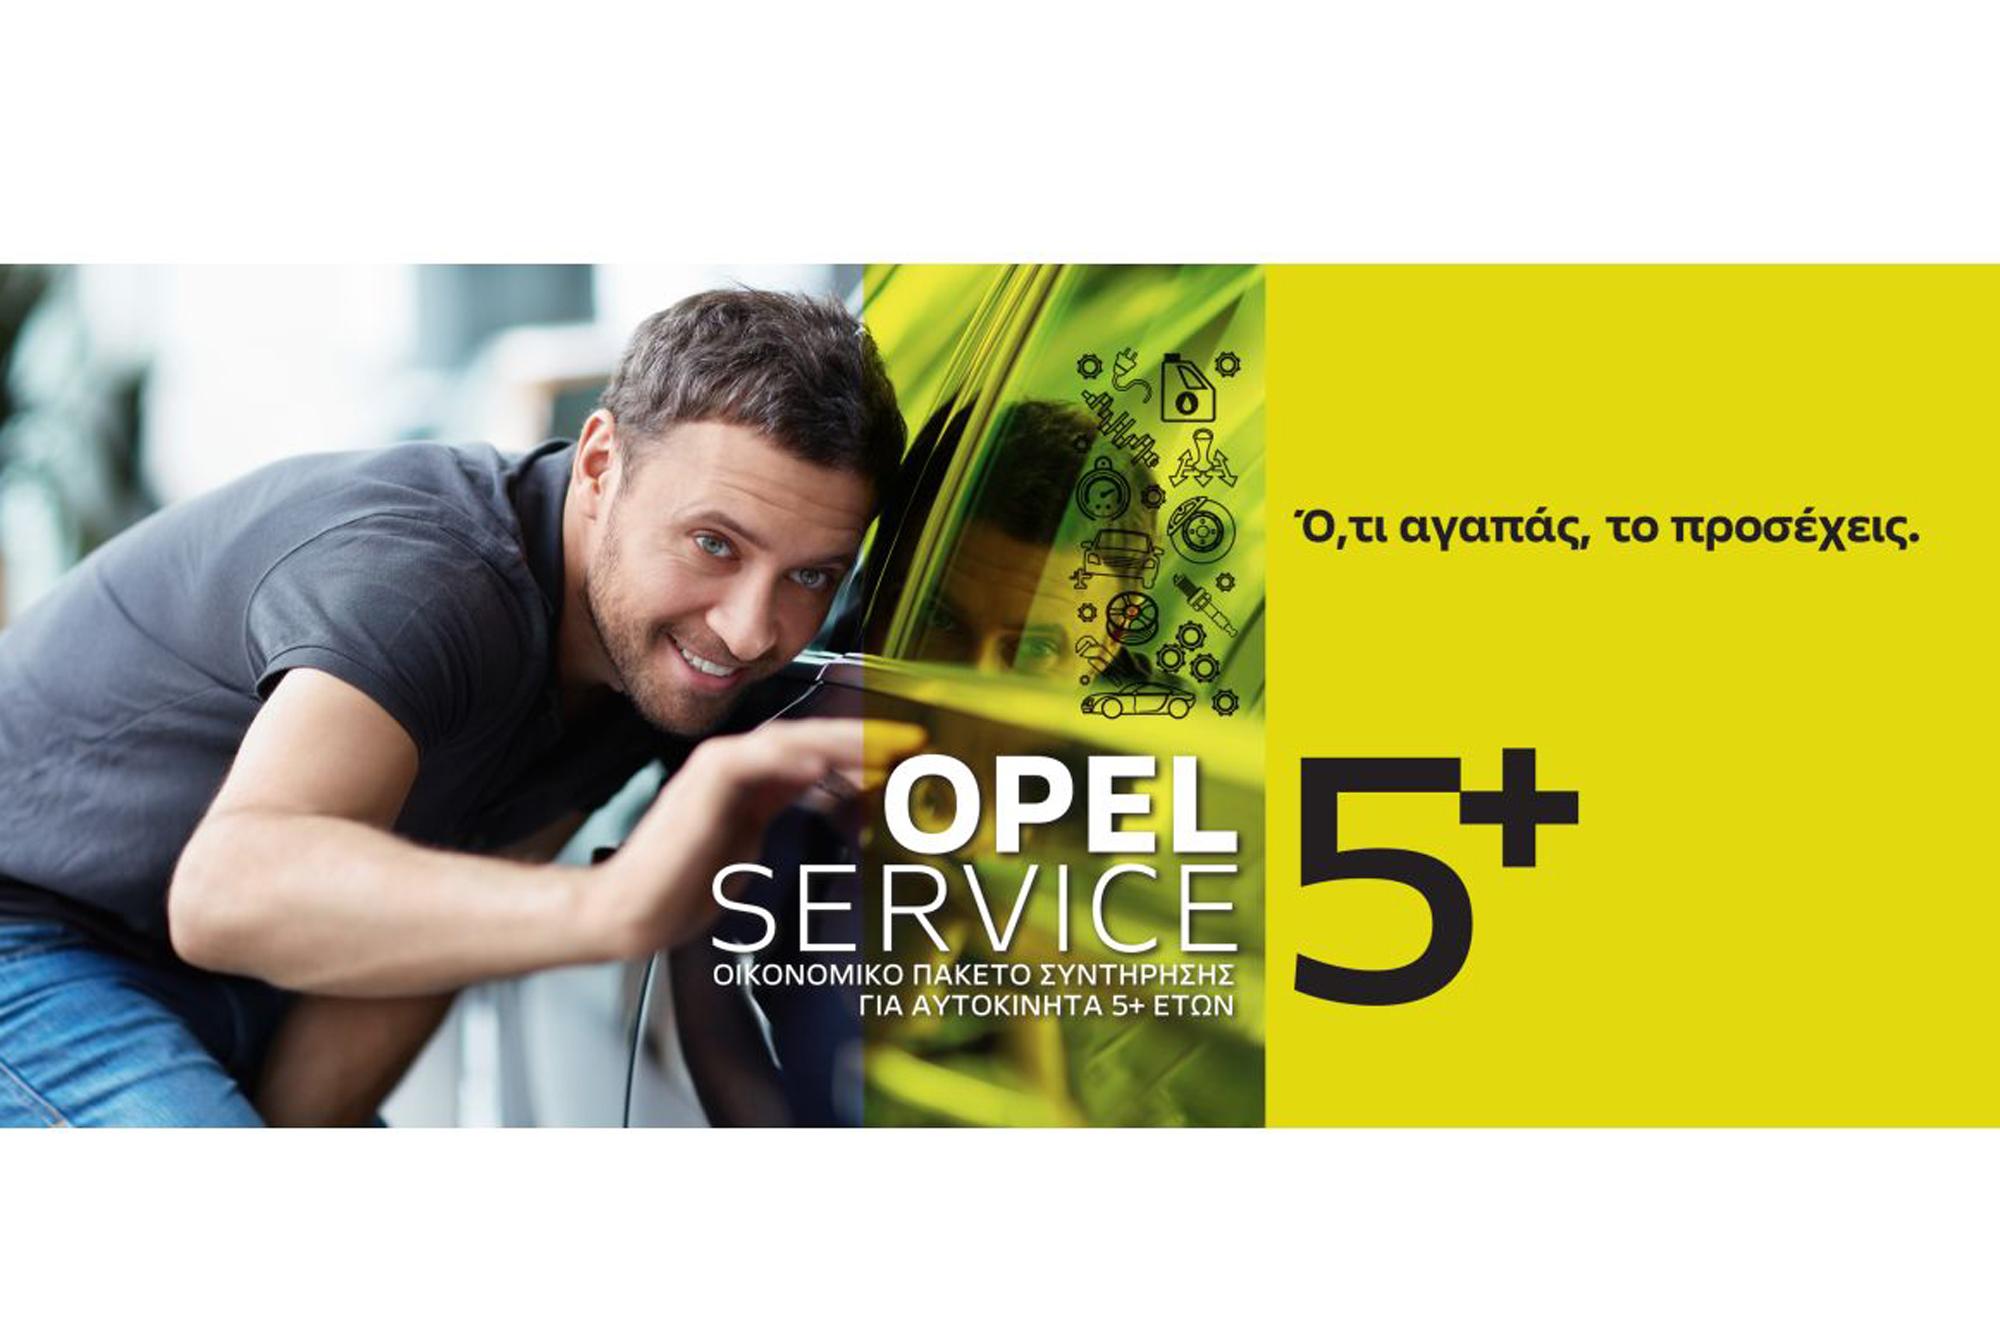 Το νέο aftersales πρόγραμμα της Opel